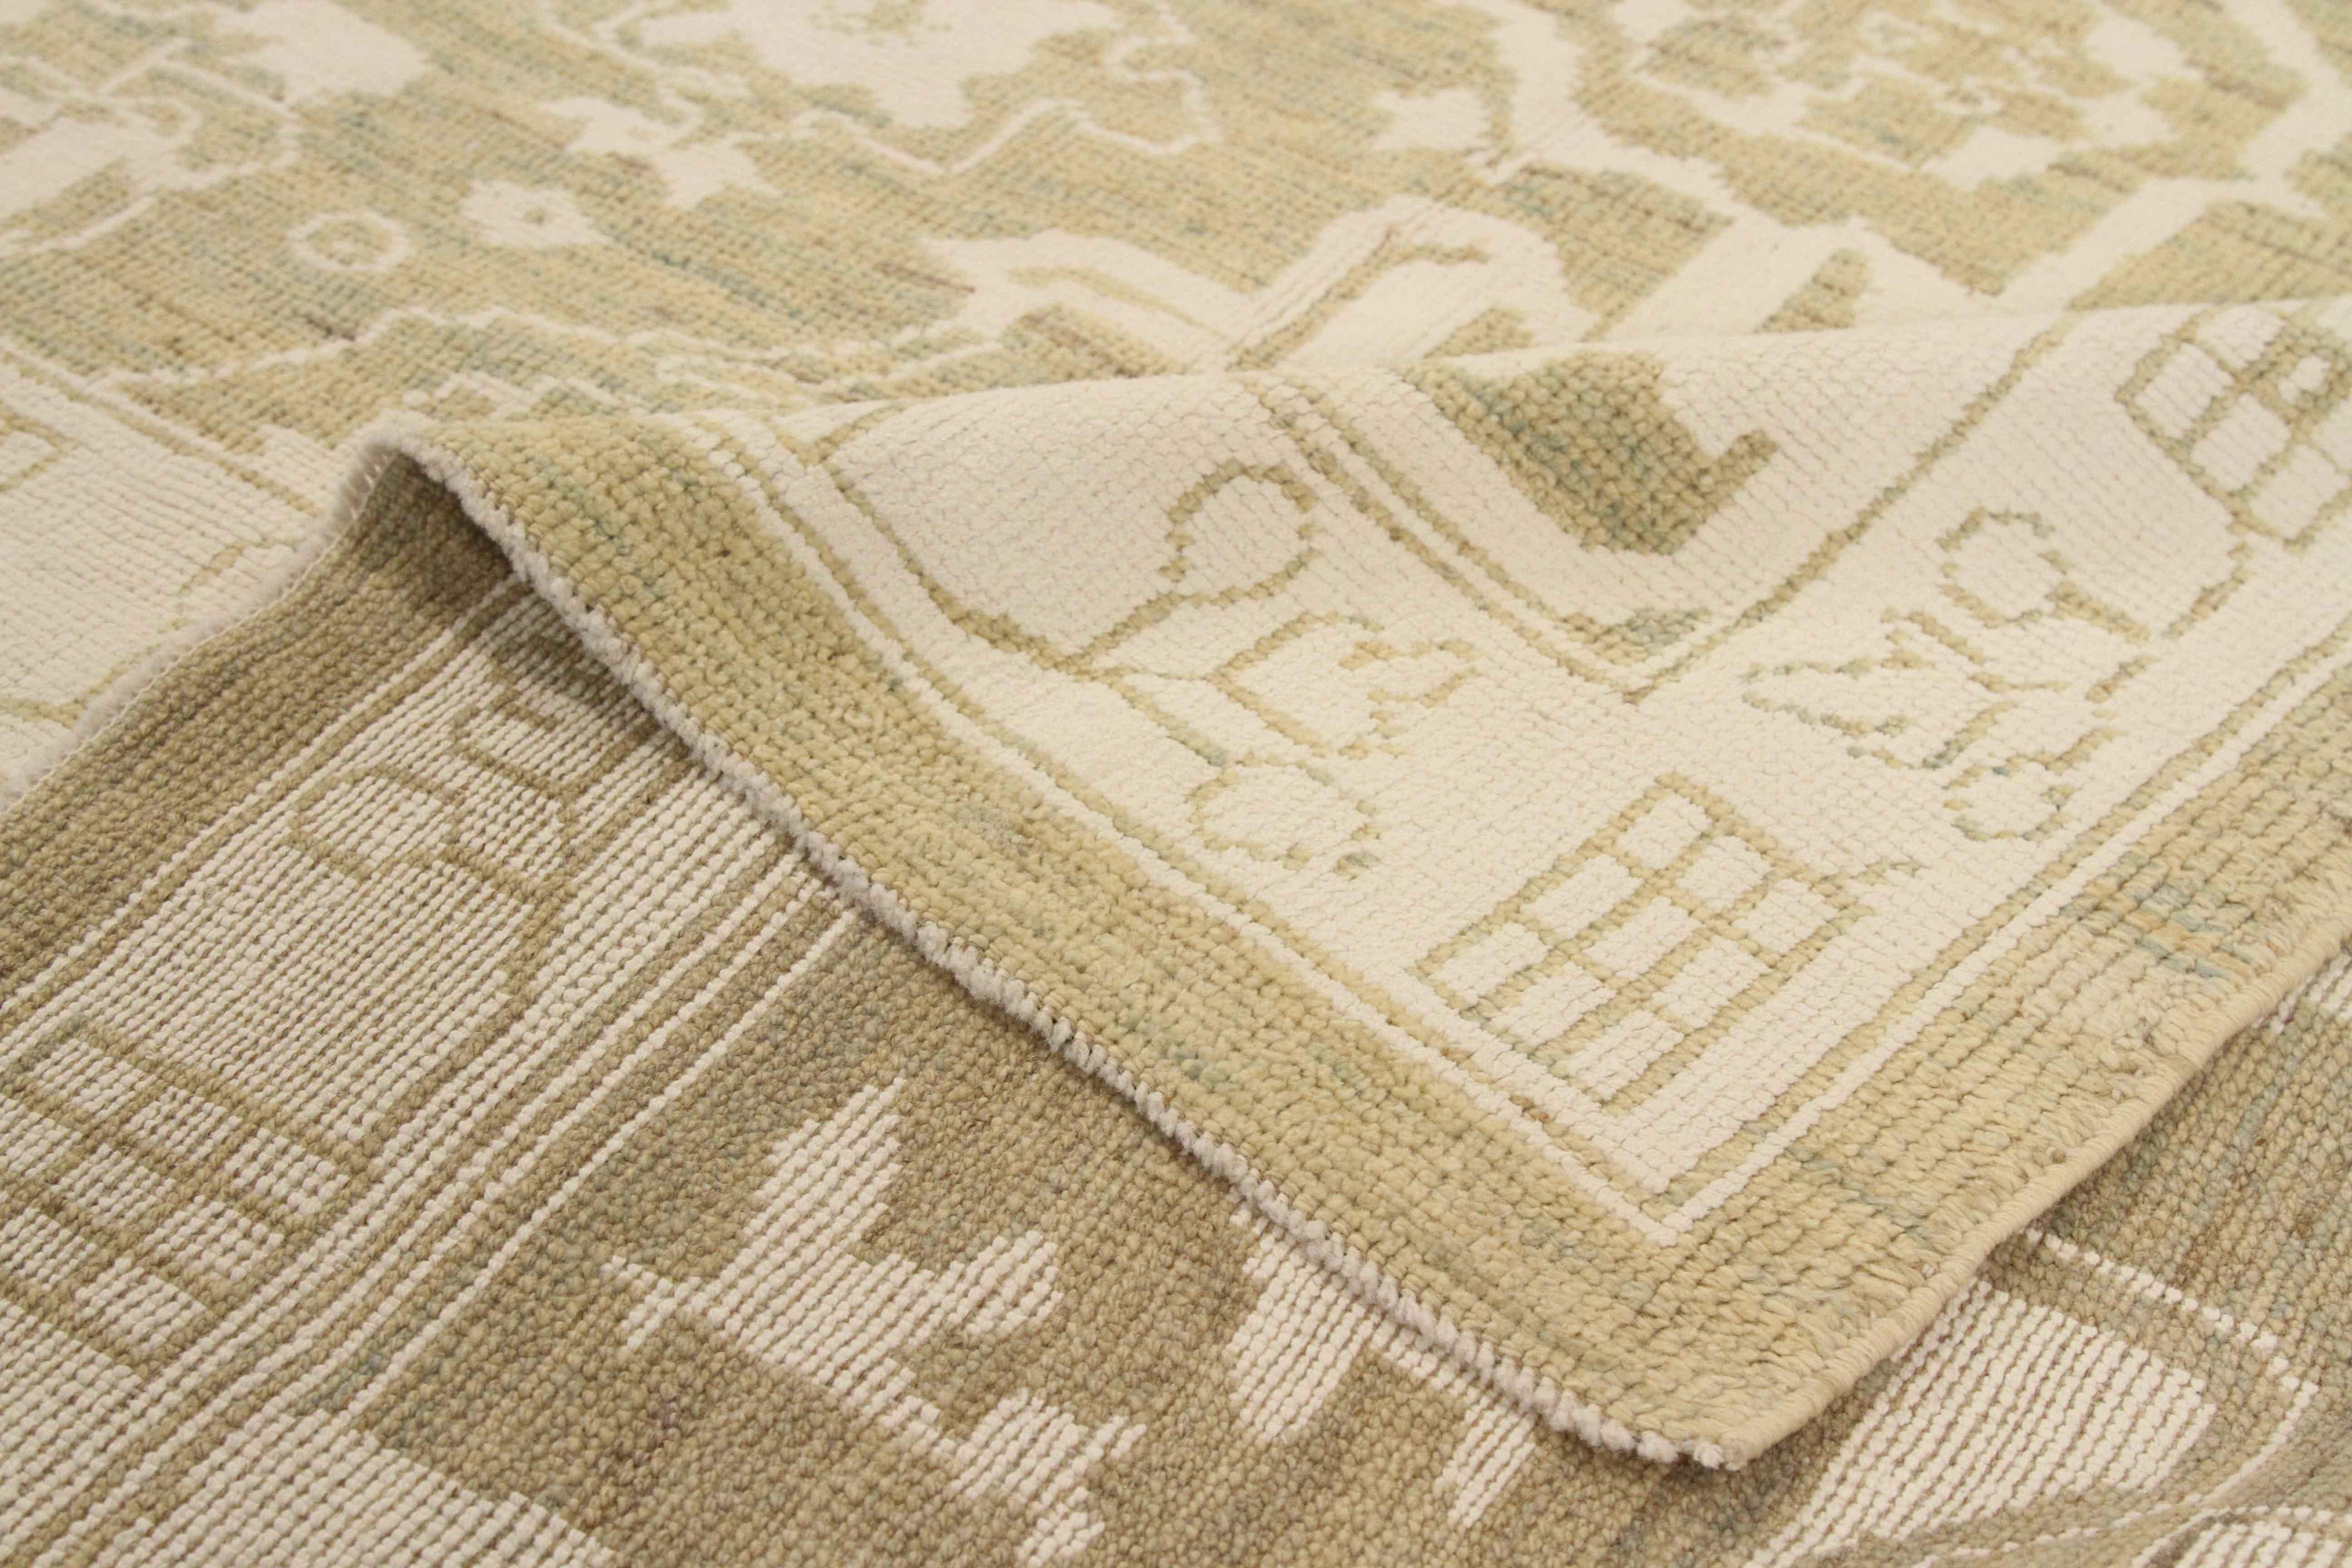 Tapis persan fabriqué en laine tissée à la main de la meilleure qualité et coloré avec des teintures végétales entièrement biologiques. Il présente un élégant motif floral à deux tons, blanc et beige, que l'on retrouve fréquemment sur les tapis